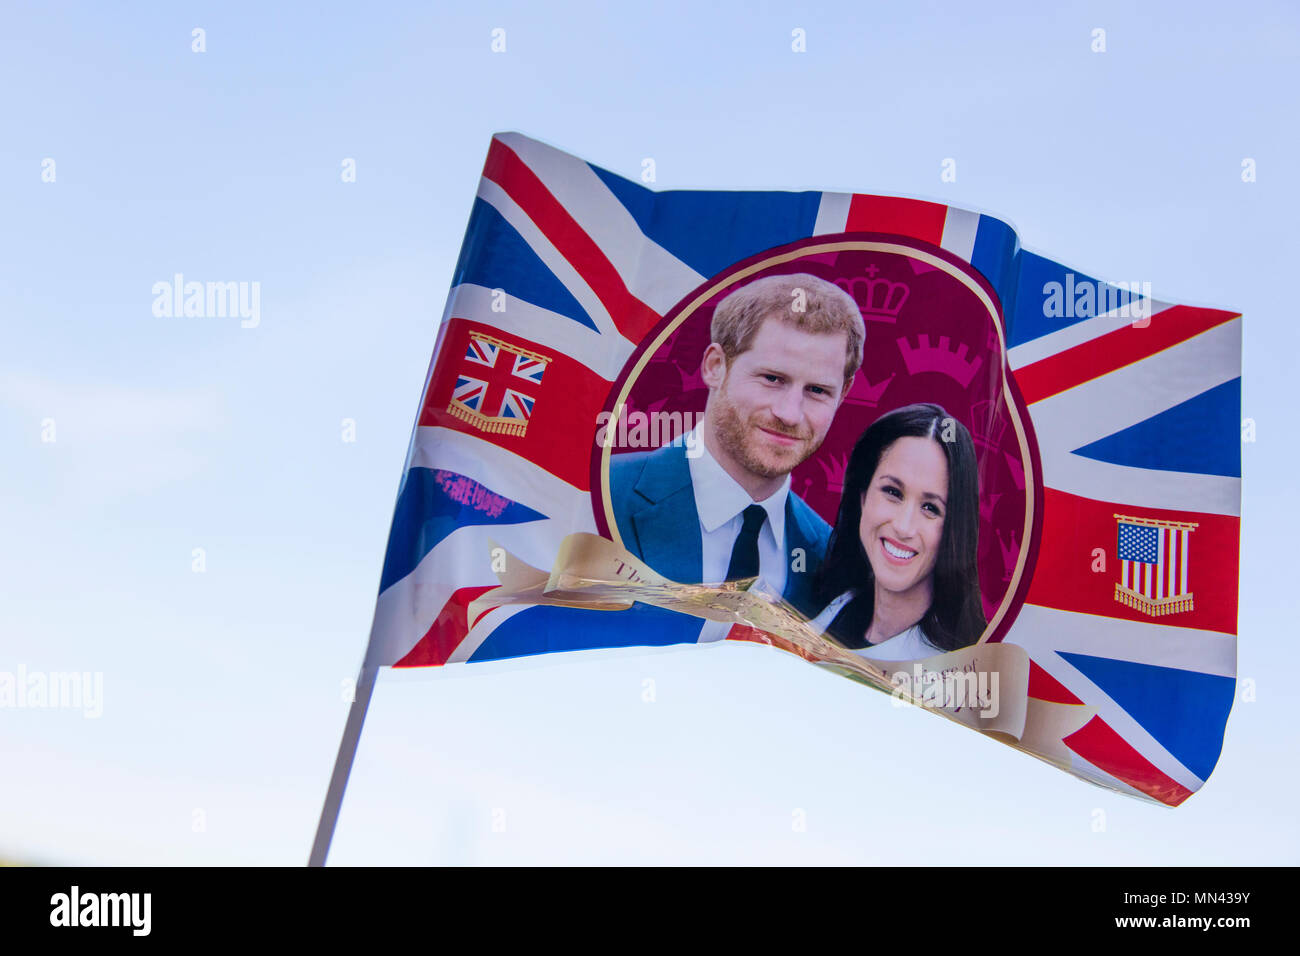 Londres, Royaume-Uni. 14 mai 2018. Union jack flag célébrant le mariage du prince Harry et Meghan markle. Goutte d'encre : Crédit/Alamy Live News Banque D'Images